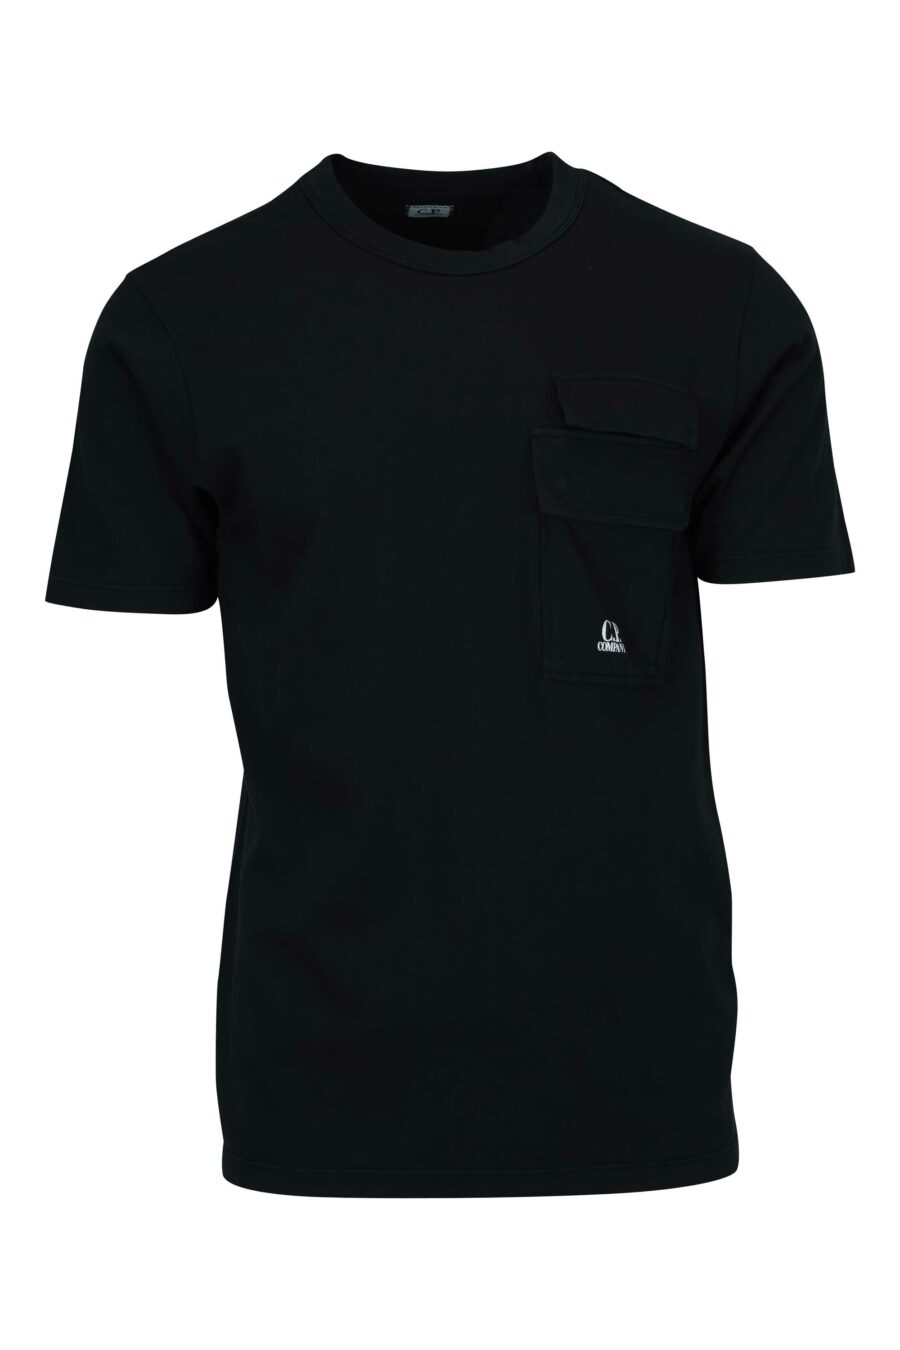 Camiseta negra con bolsillos y minilogo "cp" - 7620943767025